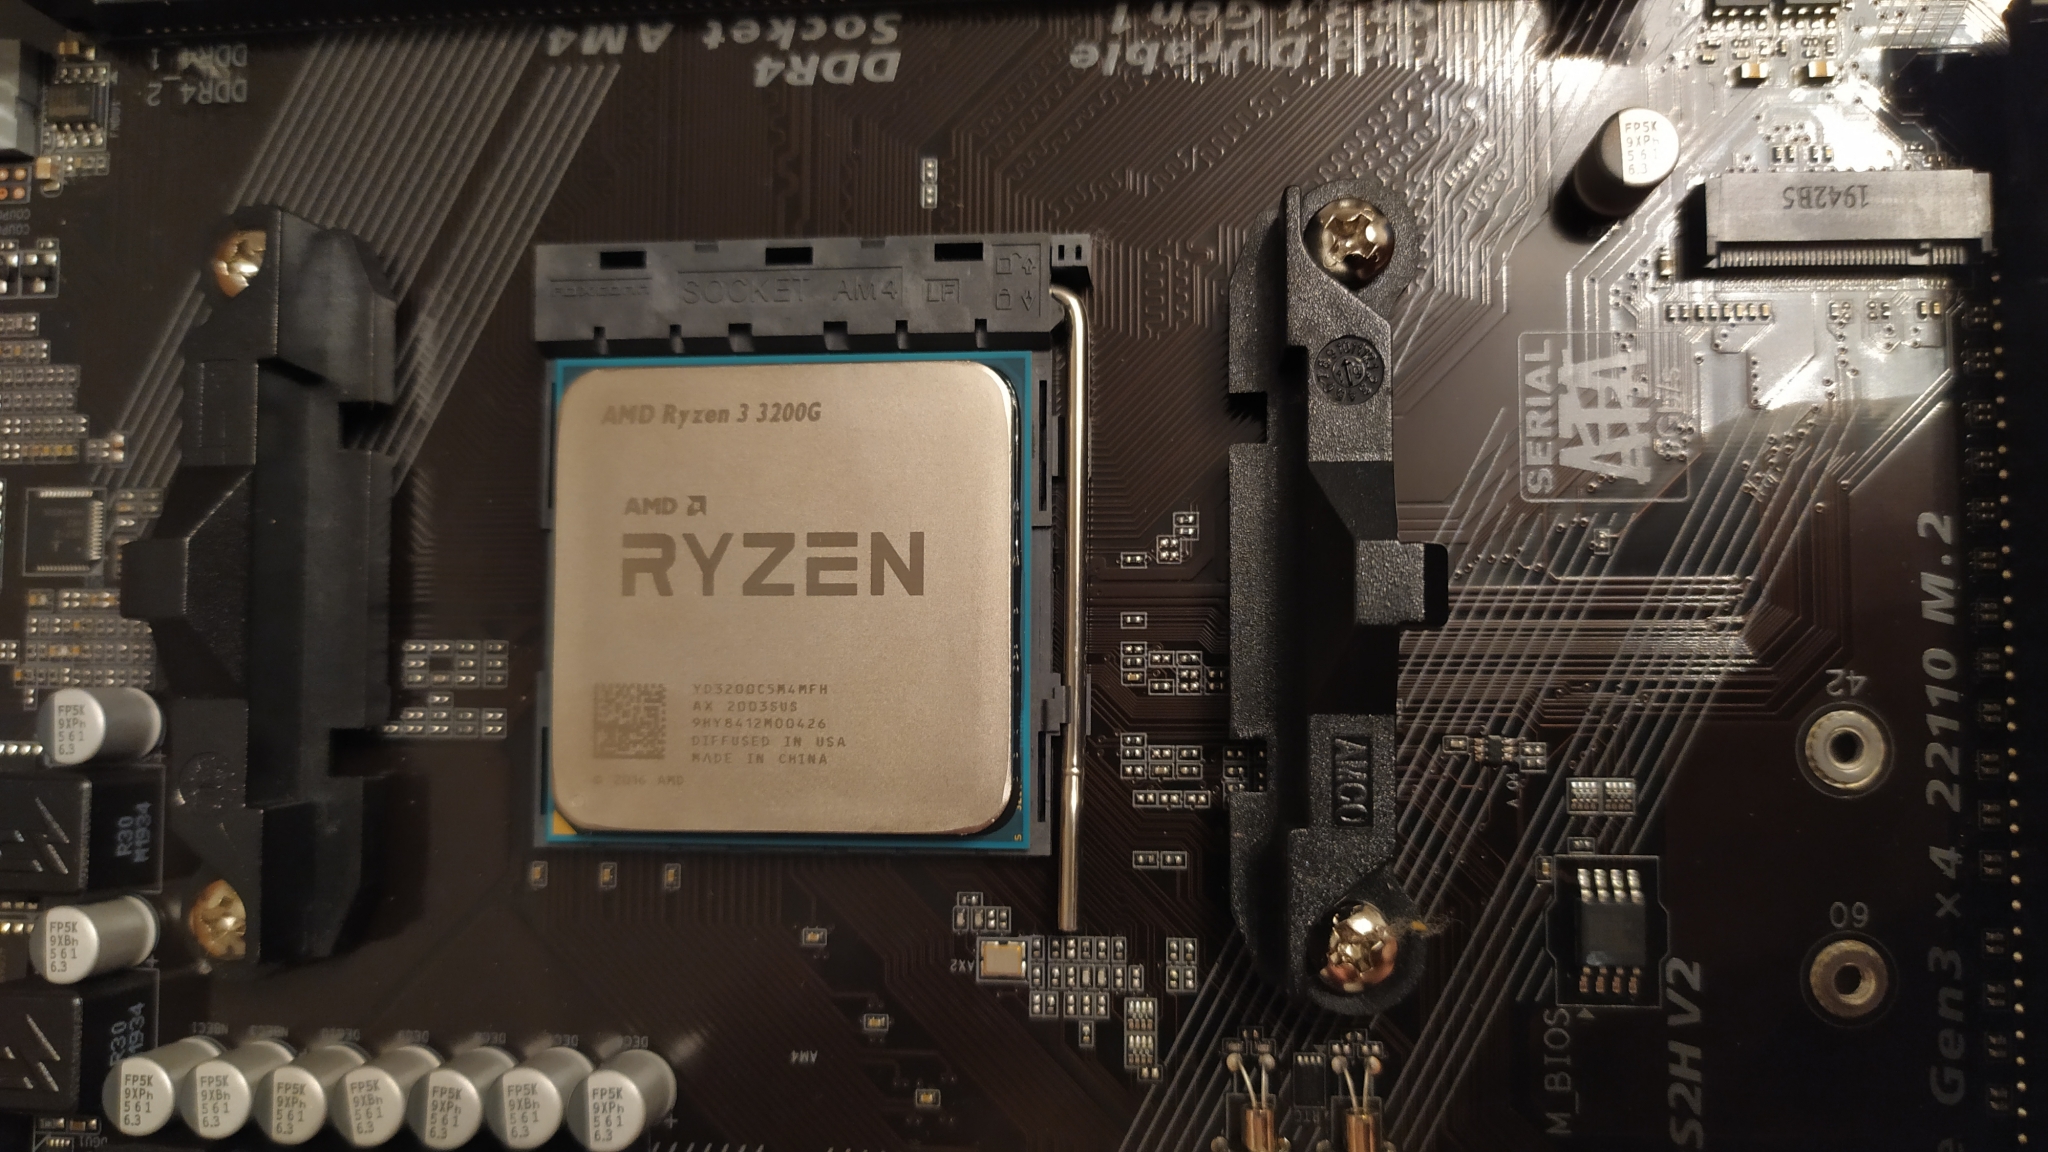 3 pro 3200g. Ryzen 3 3200g. Процессор AMD Ryzen 3 3200g. Процессор AMD Ryzen 3 3200g am4. AMD Ryzen 3 Pro 3200g.